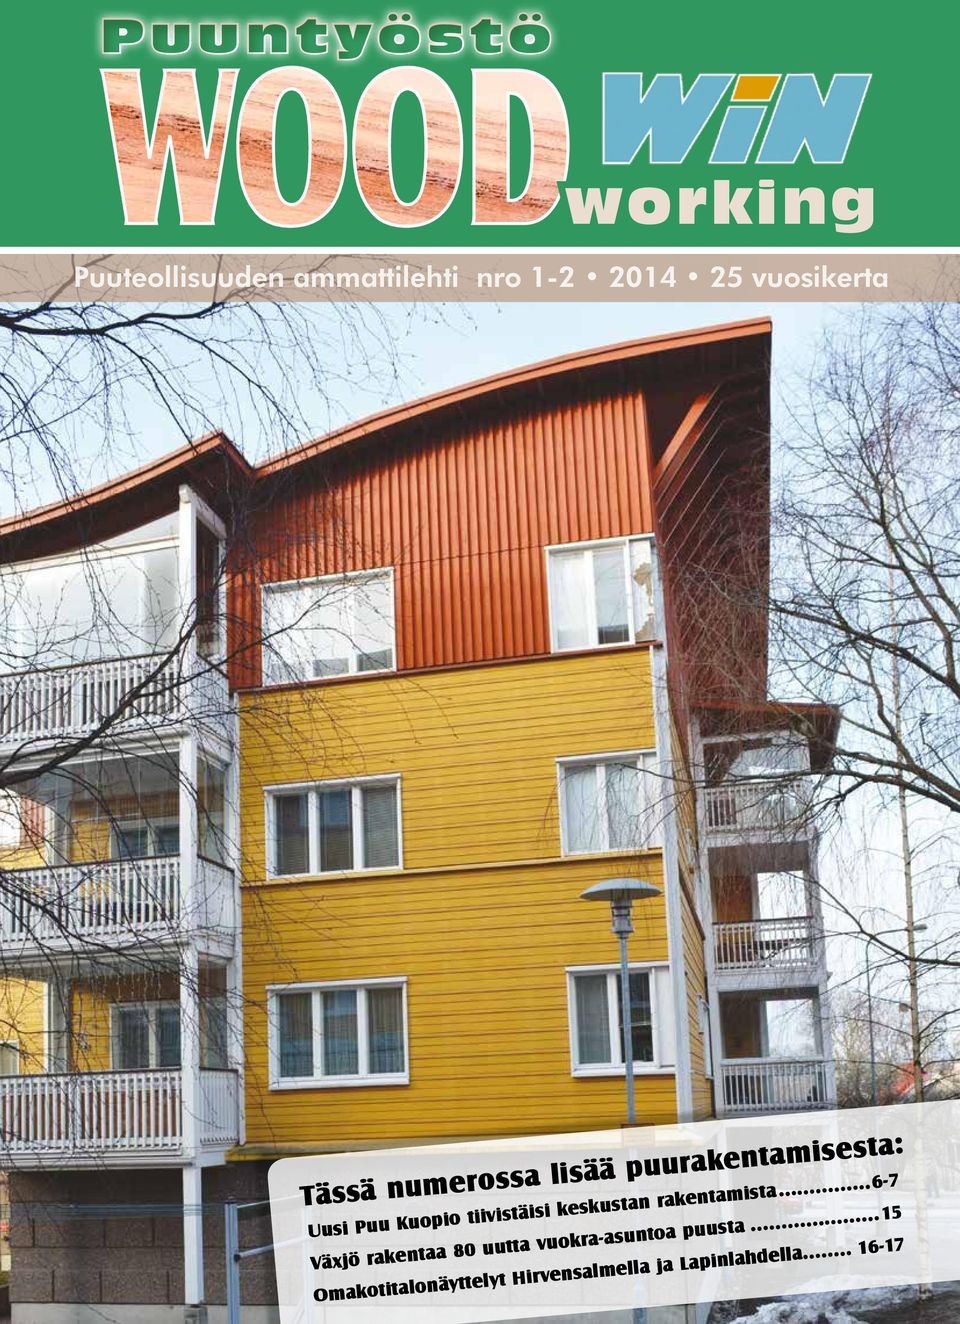 keskustan rakentamista...6-7 Växjö rakentaa 80 uutta vuokra-asuntoa puusta.